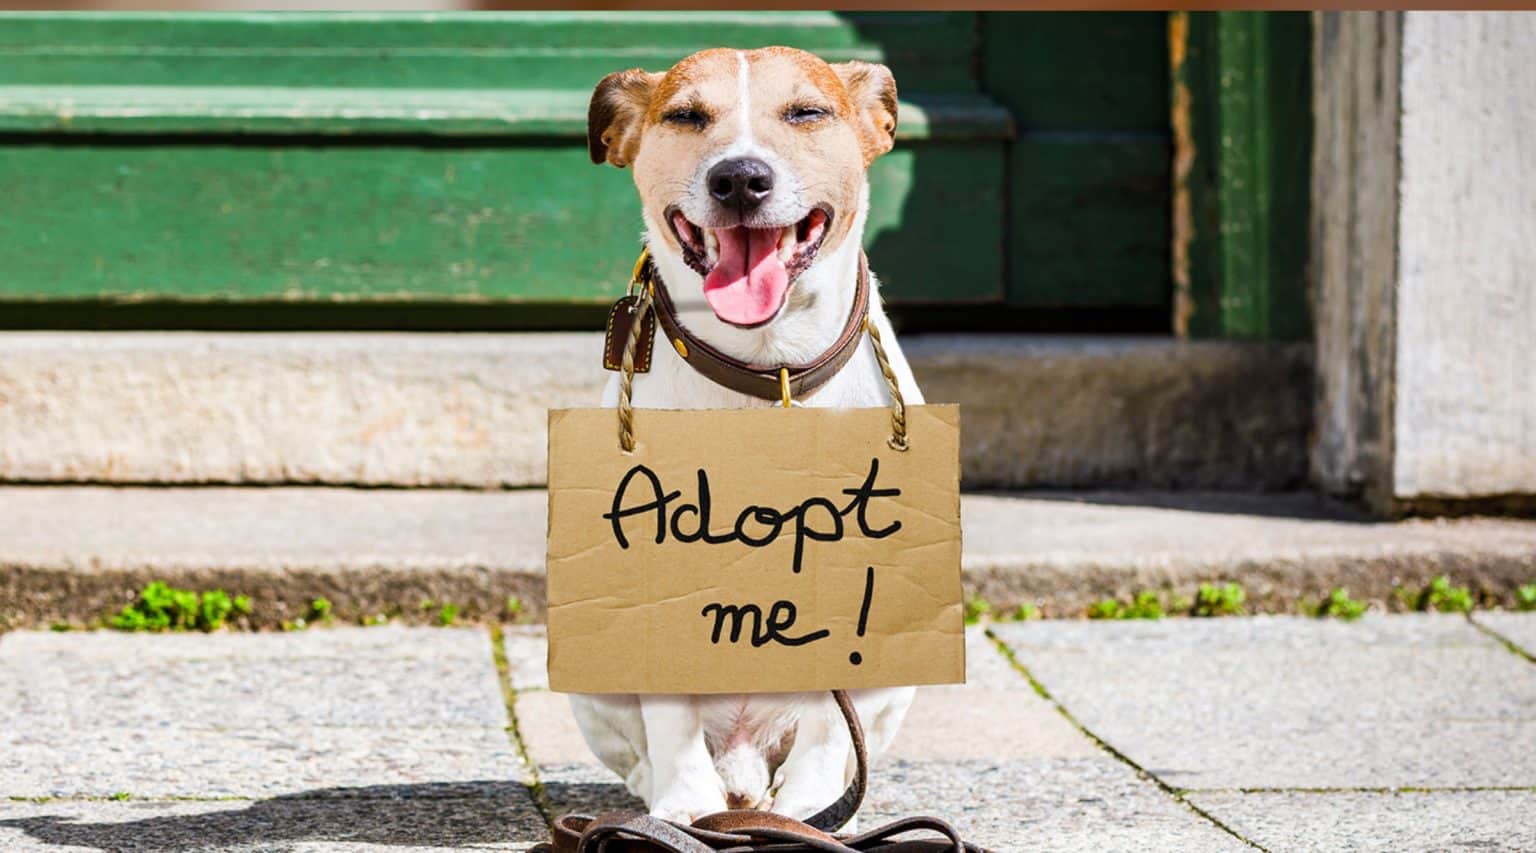 Is Pet Adoption Free